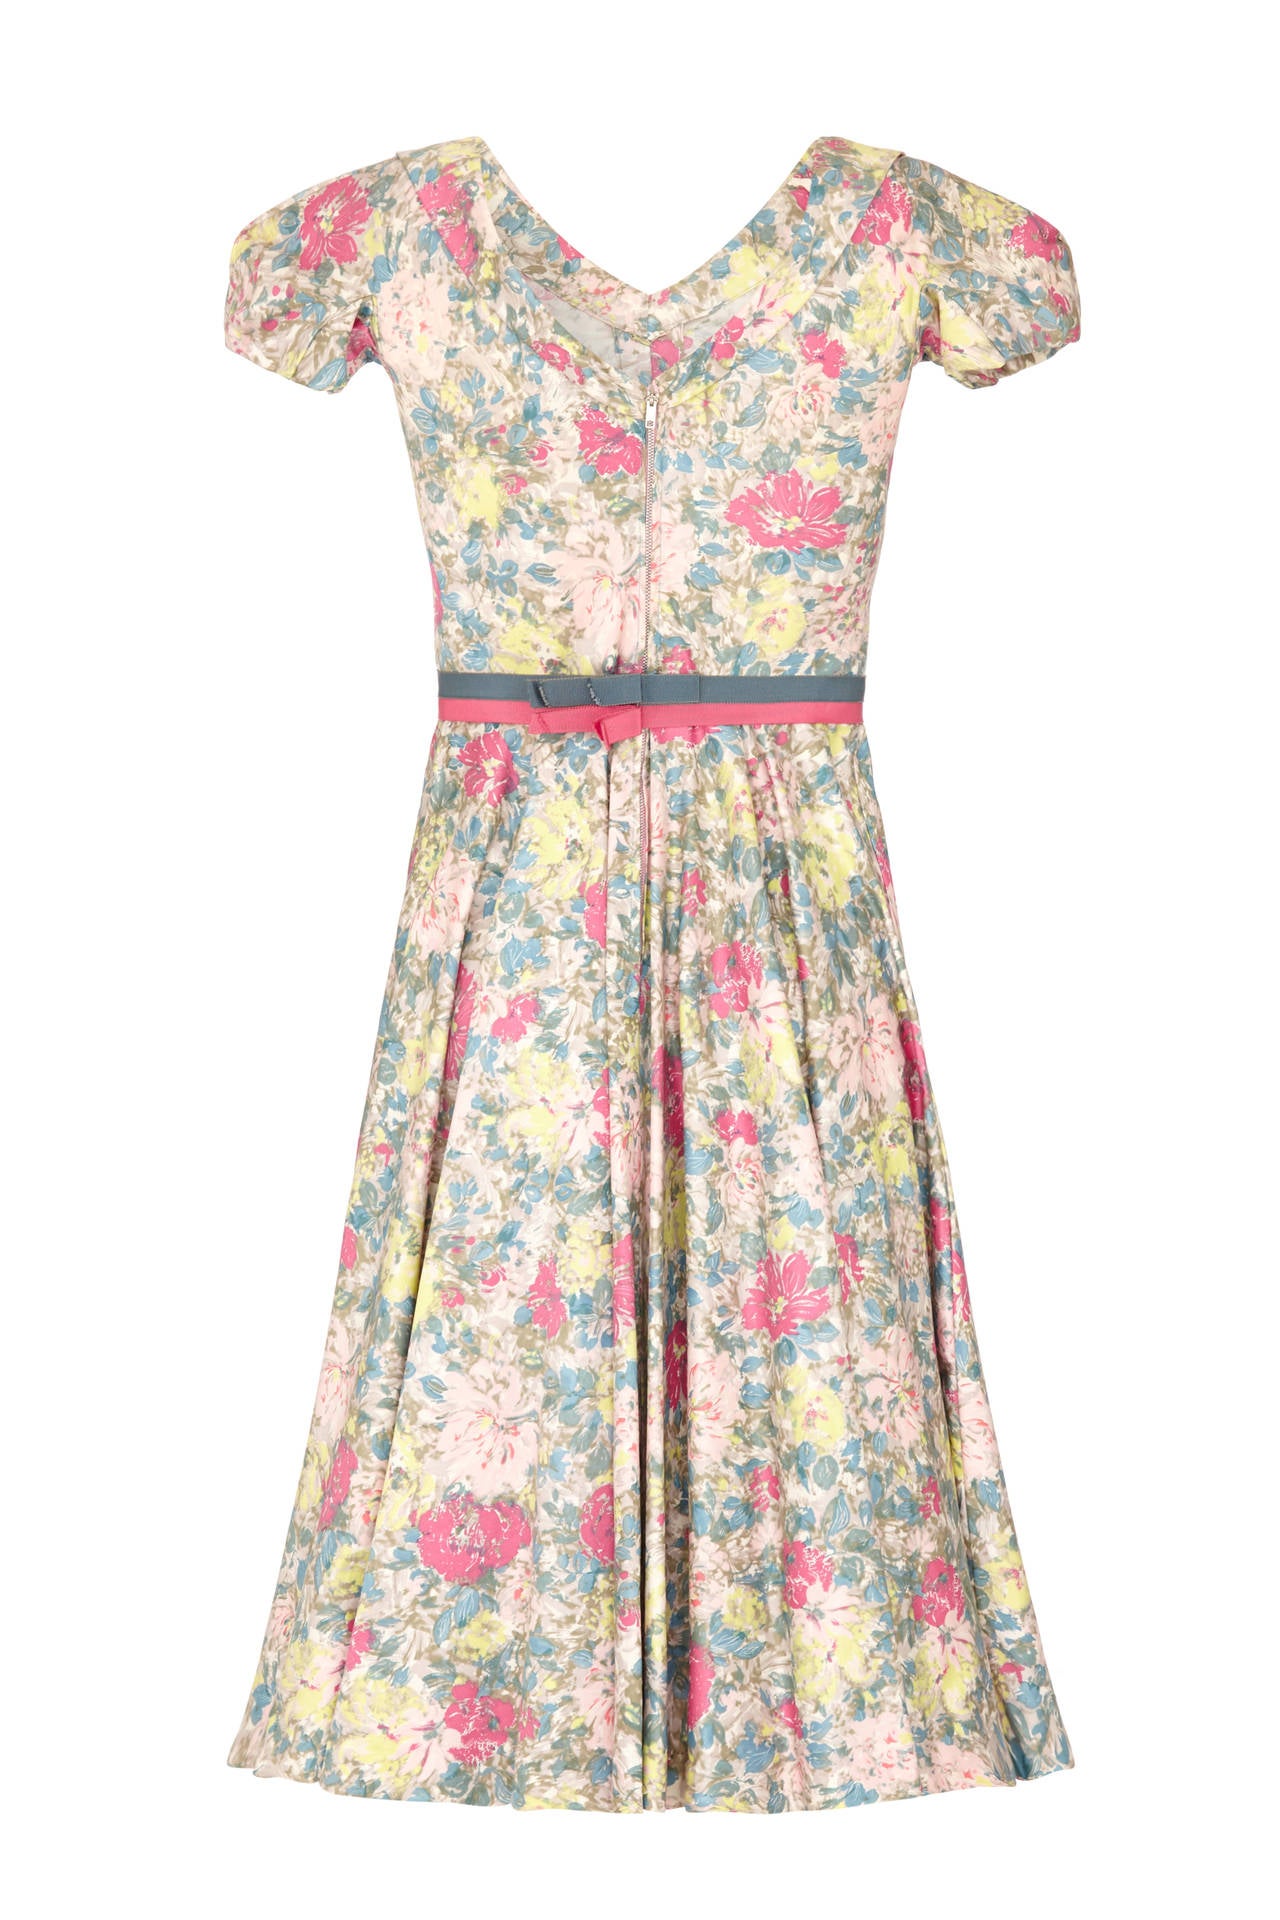 Dieses bezaubernde Kleid mit Blumendruck aus polierter Baumwolle des amerikanischen Labels Jane Derby aus den 1950er oder frühen 1960er Jahren, als Oscar de la Renta der Chefdesigner war, zeigt eine exquisite Schnittführung mit dem originalen Gürtel